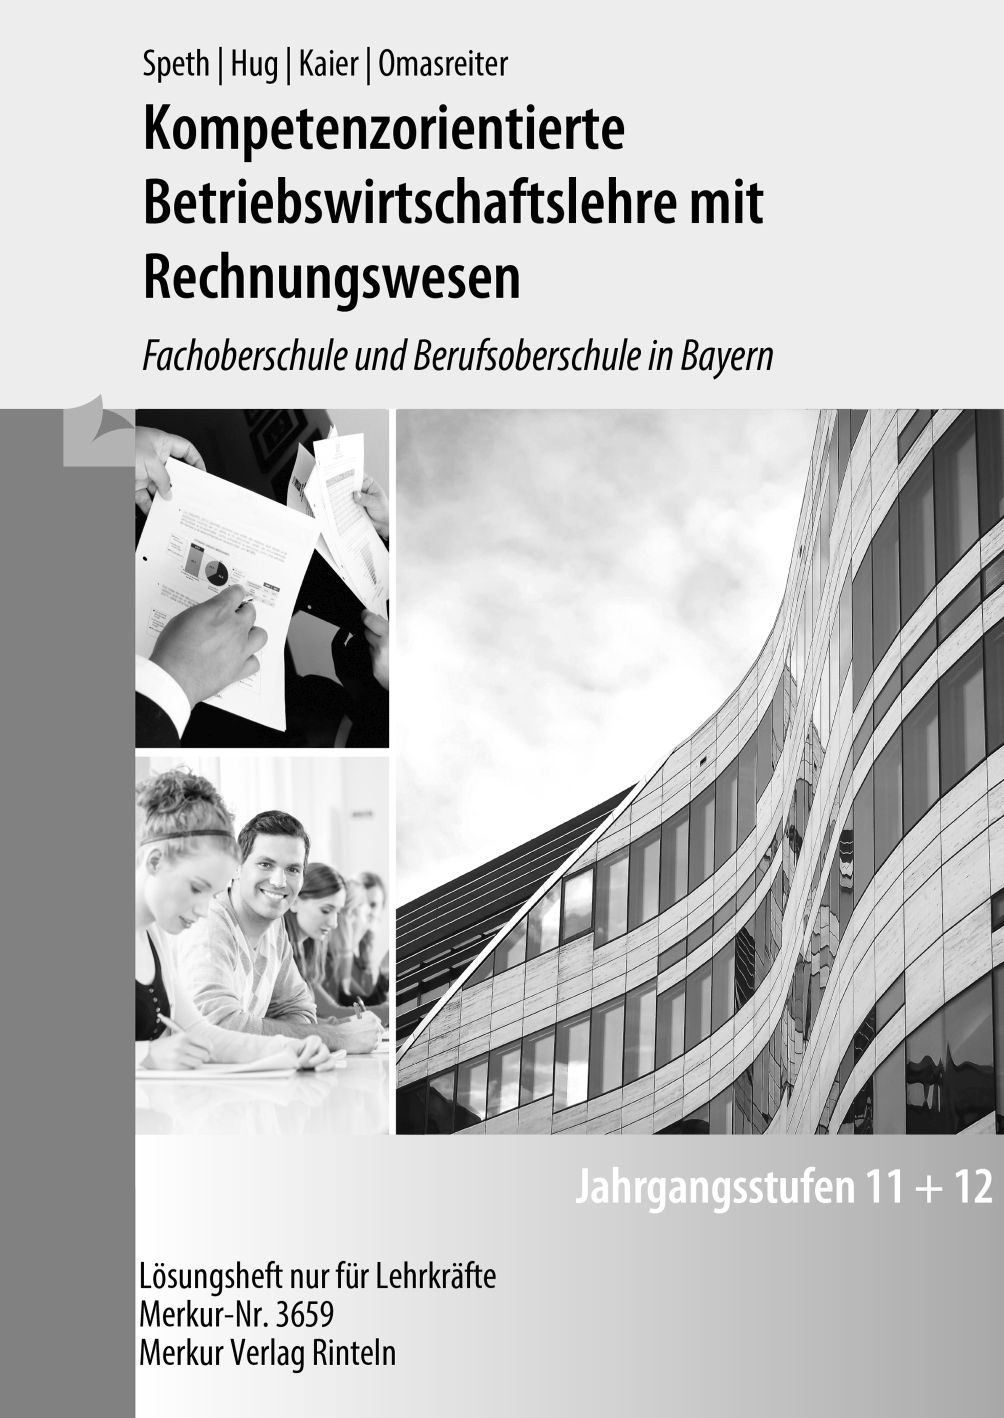 Kompetenzorientierte Betriebswirtschaftslehre mit Rechnungswesen FOS/BOS in Bayern Jgst. 11 + 12 - Lösungen